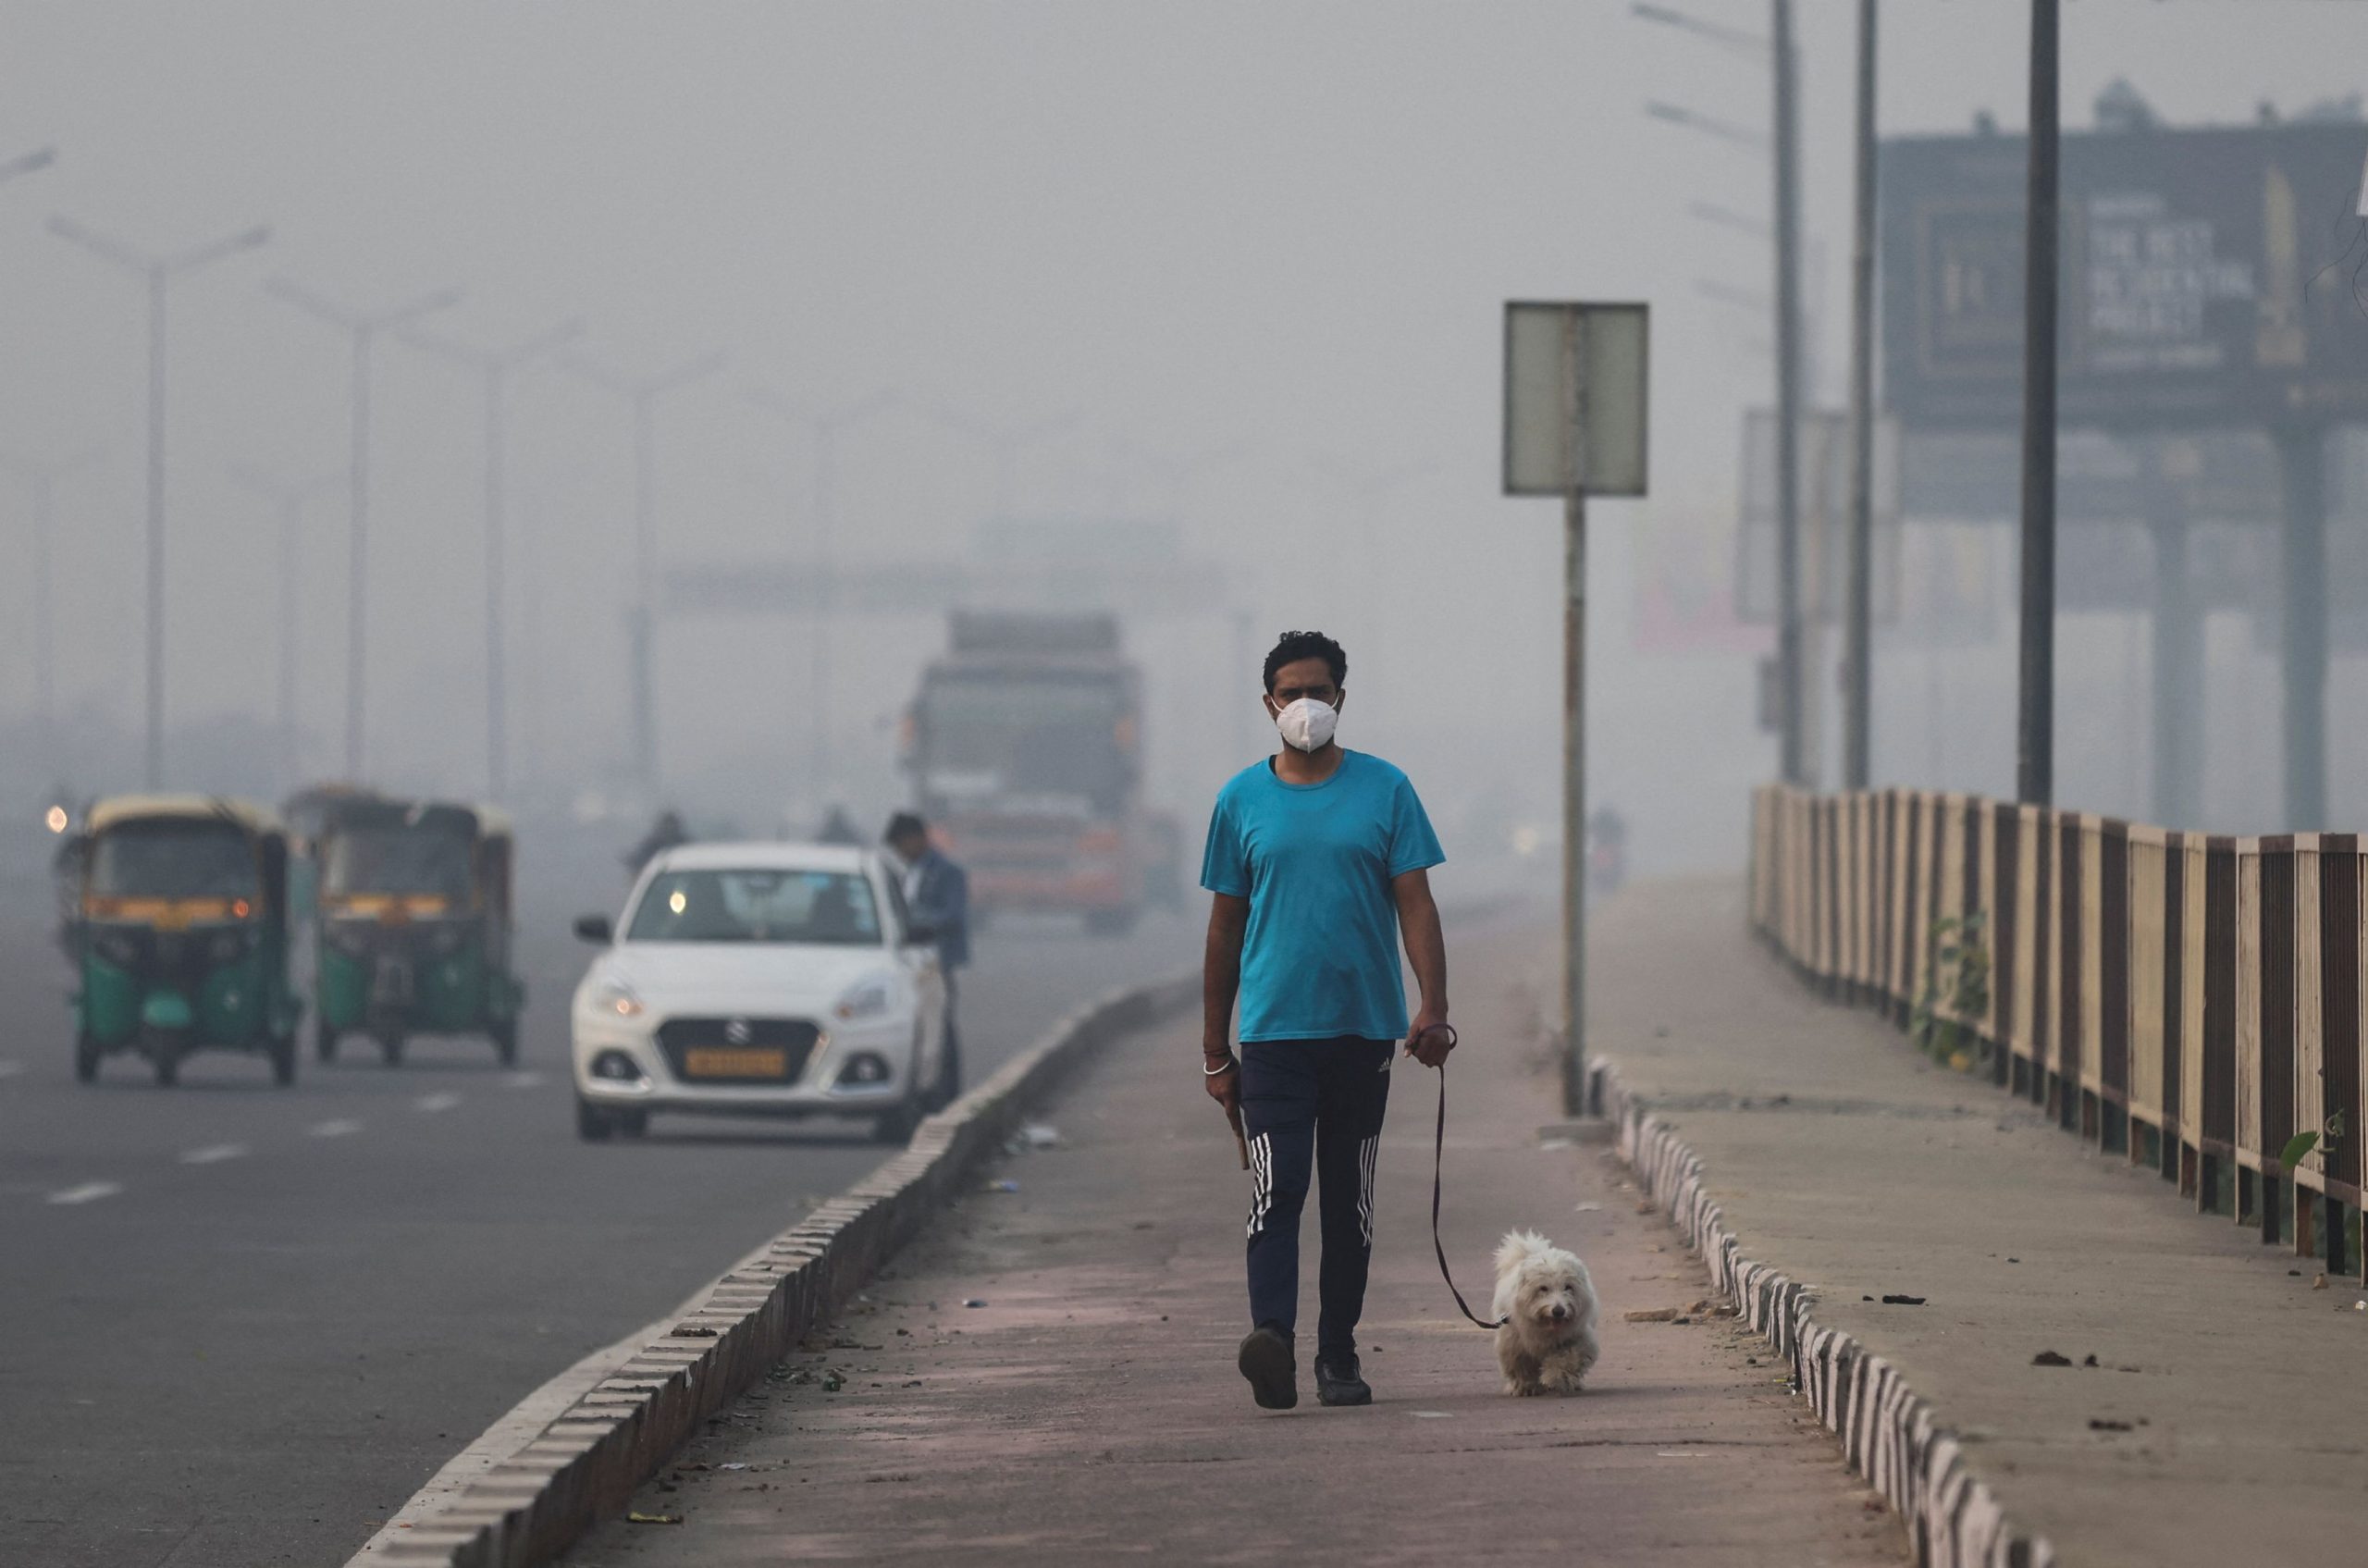 Ινδία: Στις 10 πιο μολυσμένες πόλεις του κόσμου τρεις ινδικές, μετά τη γιορτή του Ντιβάλι